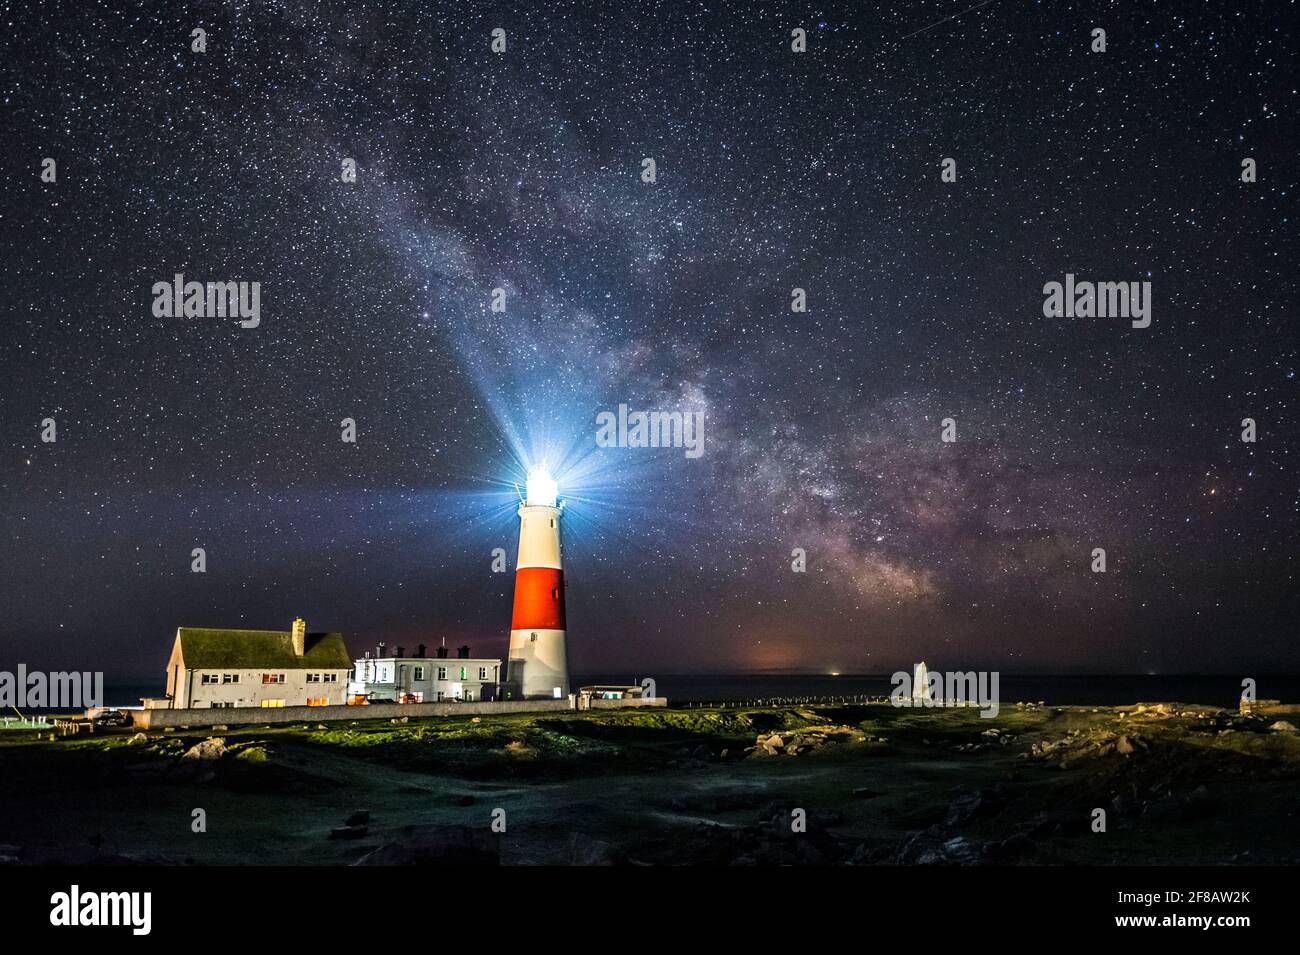 Estrellas caminan fotografías e imágenes de alta resolución - Página 11 -  Alamy